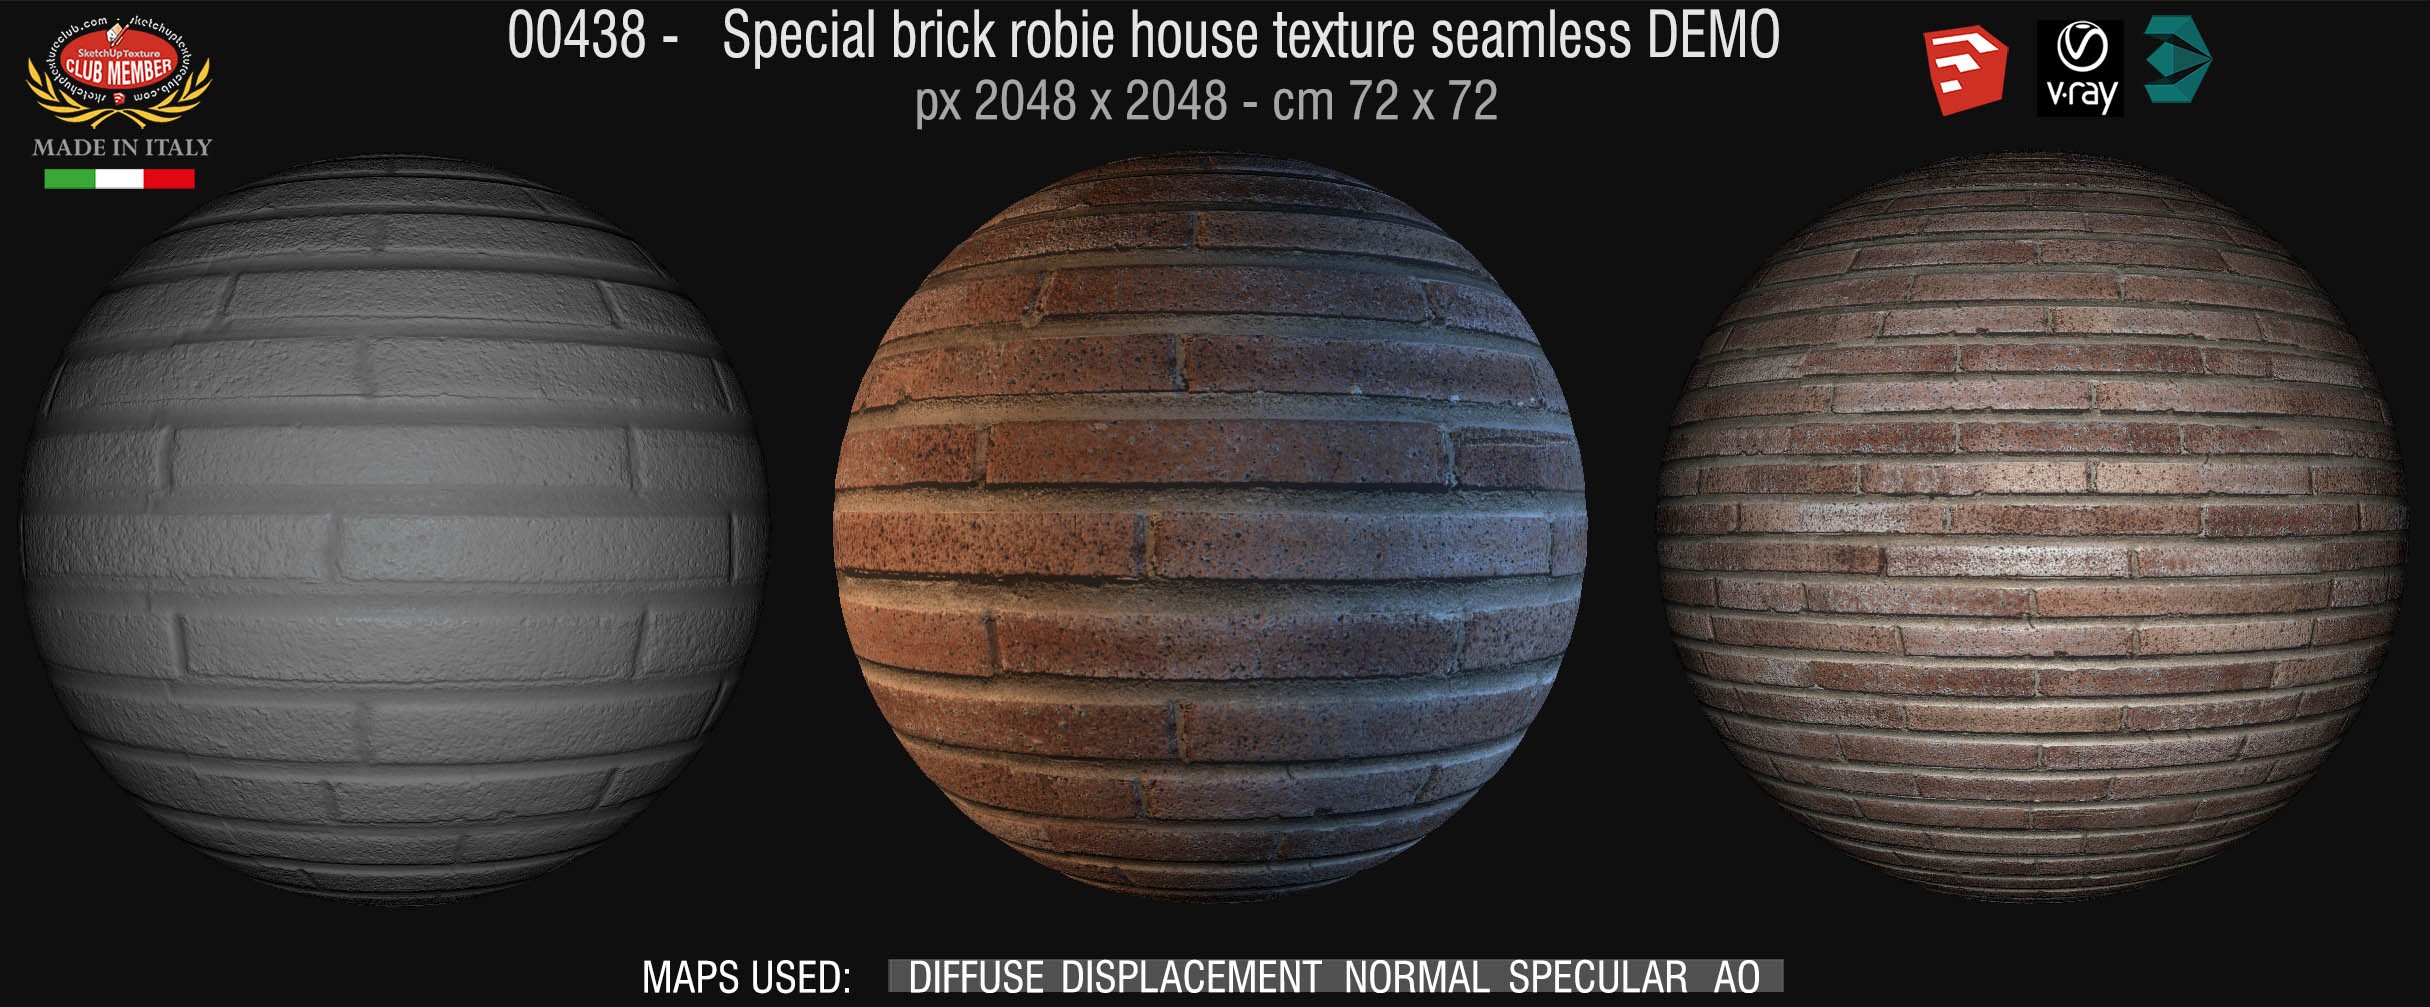 00438 special brick robie house texture seamless + maps DEMO